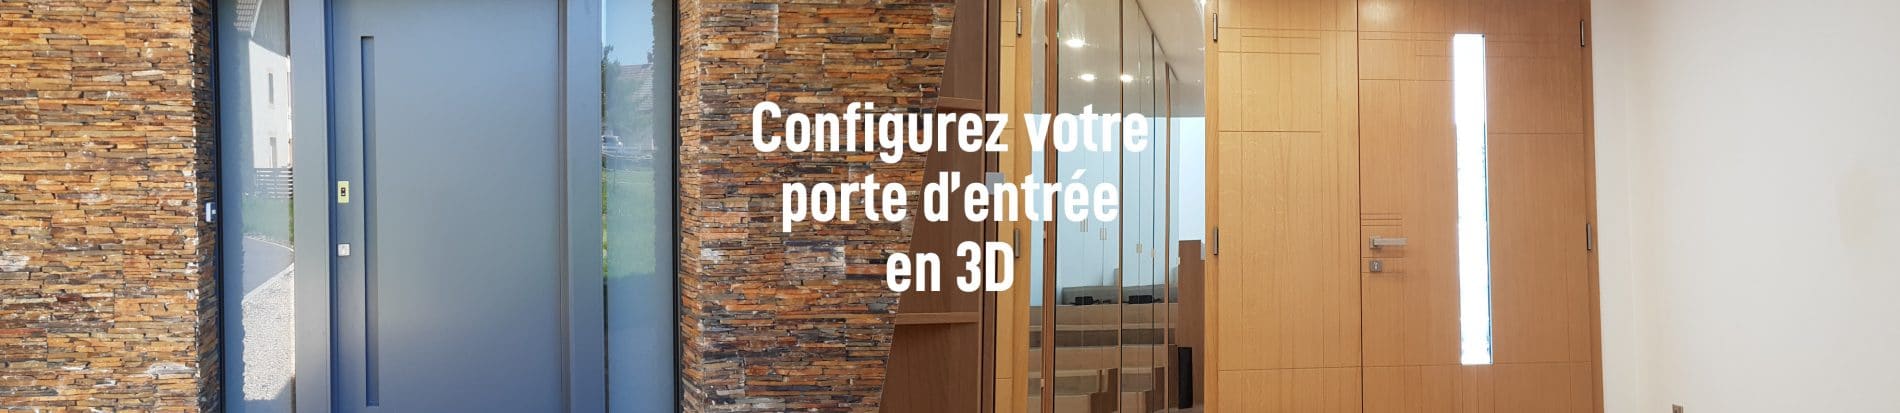 2 portes d'entrée Minco en bois et aluminium pour présenter l'outil de configuration 3D pour créer sa porte d'entrée personnalisée.